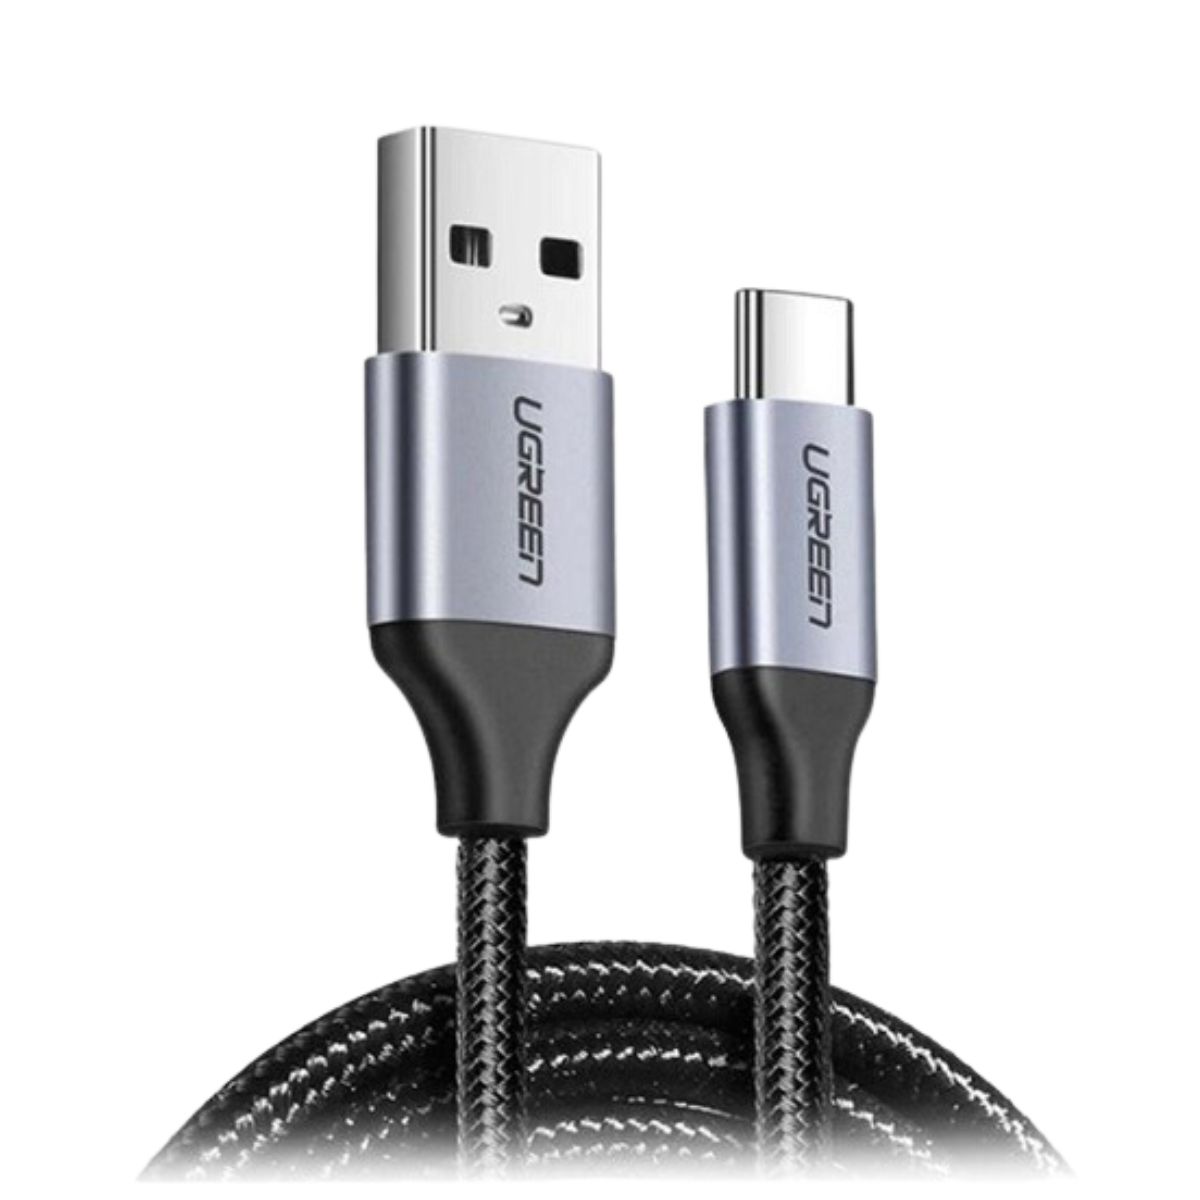 Cáp sạc USB 2.0 sang Type-C Ugreen US288, 60125 chiều dài 50cm, màu đen, hỗ trợ sạc nhanh 3A